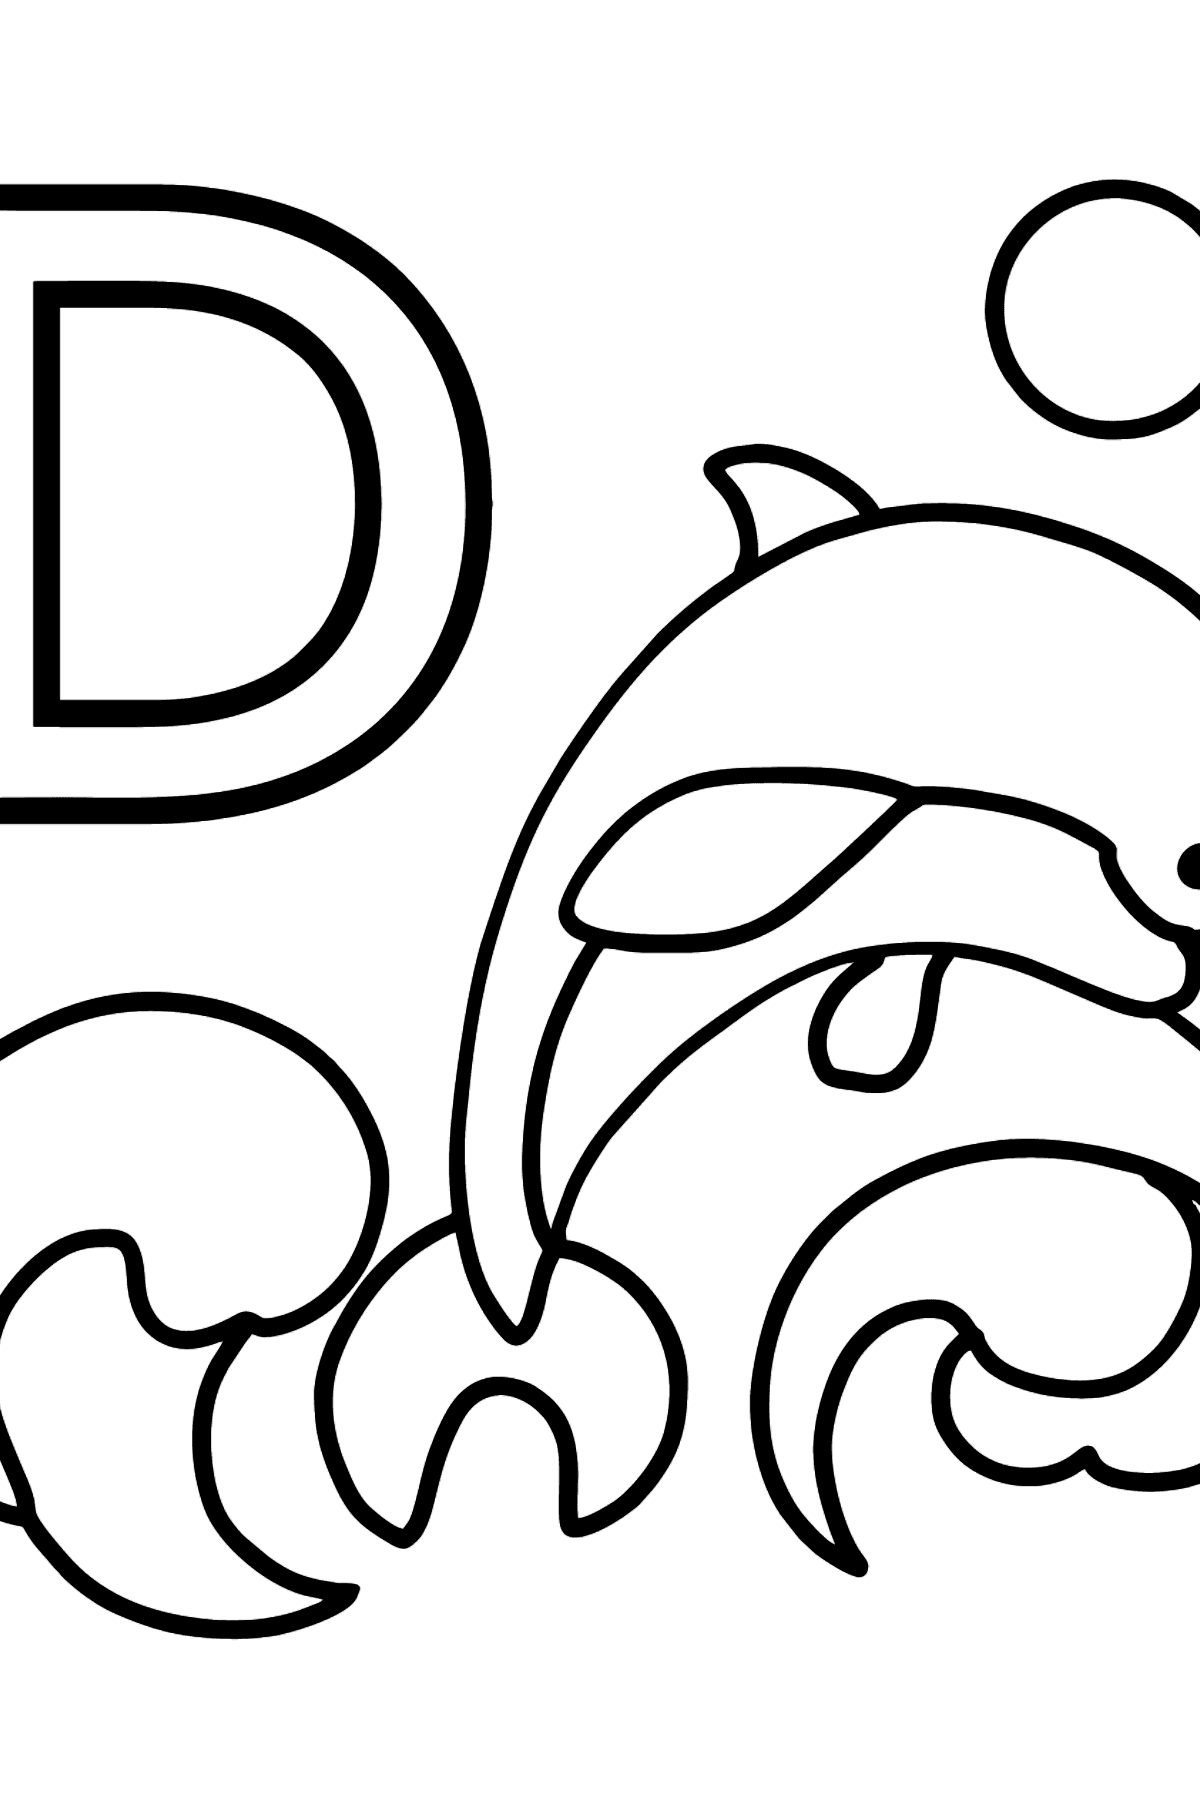 Desenho de Letra inglês D para colorir - DOLPHIN - Imagens para Colorir para Crianças